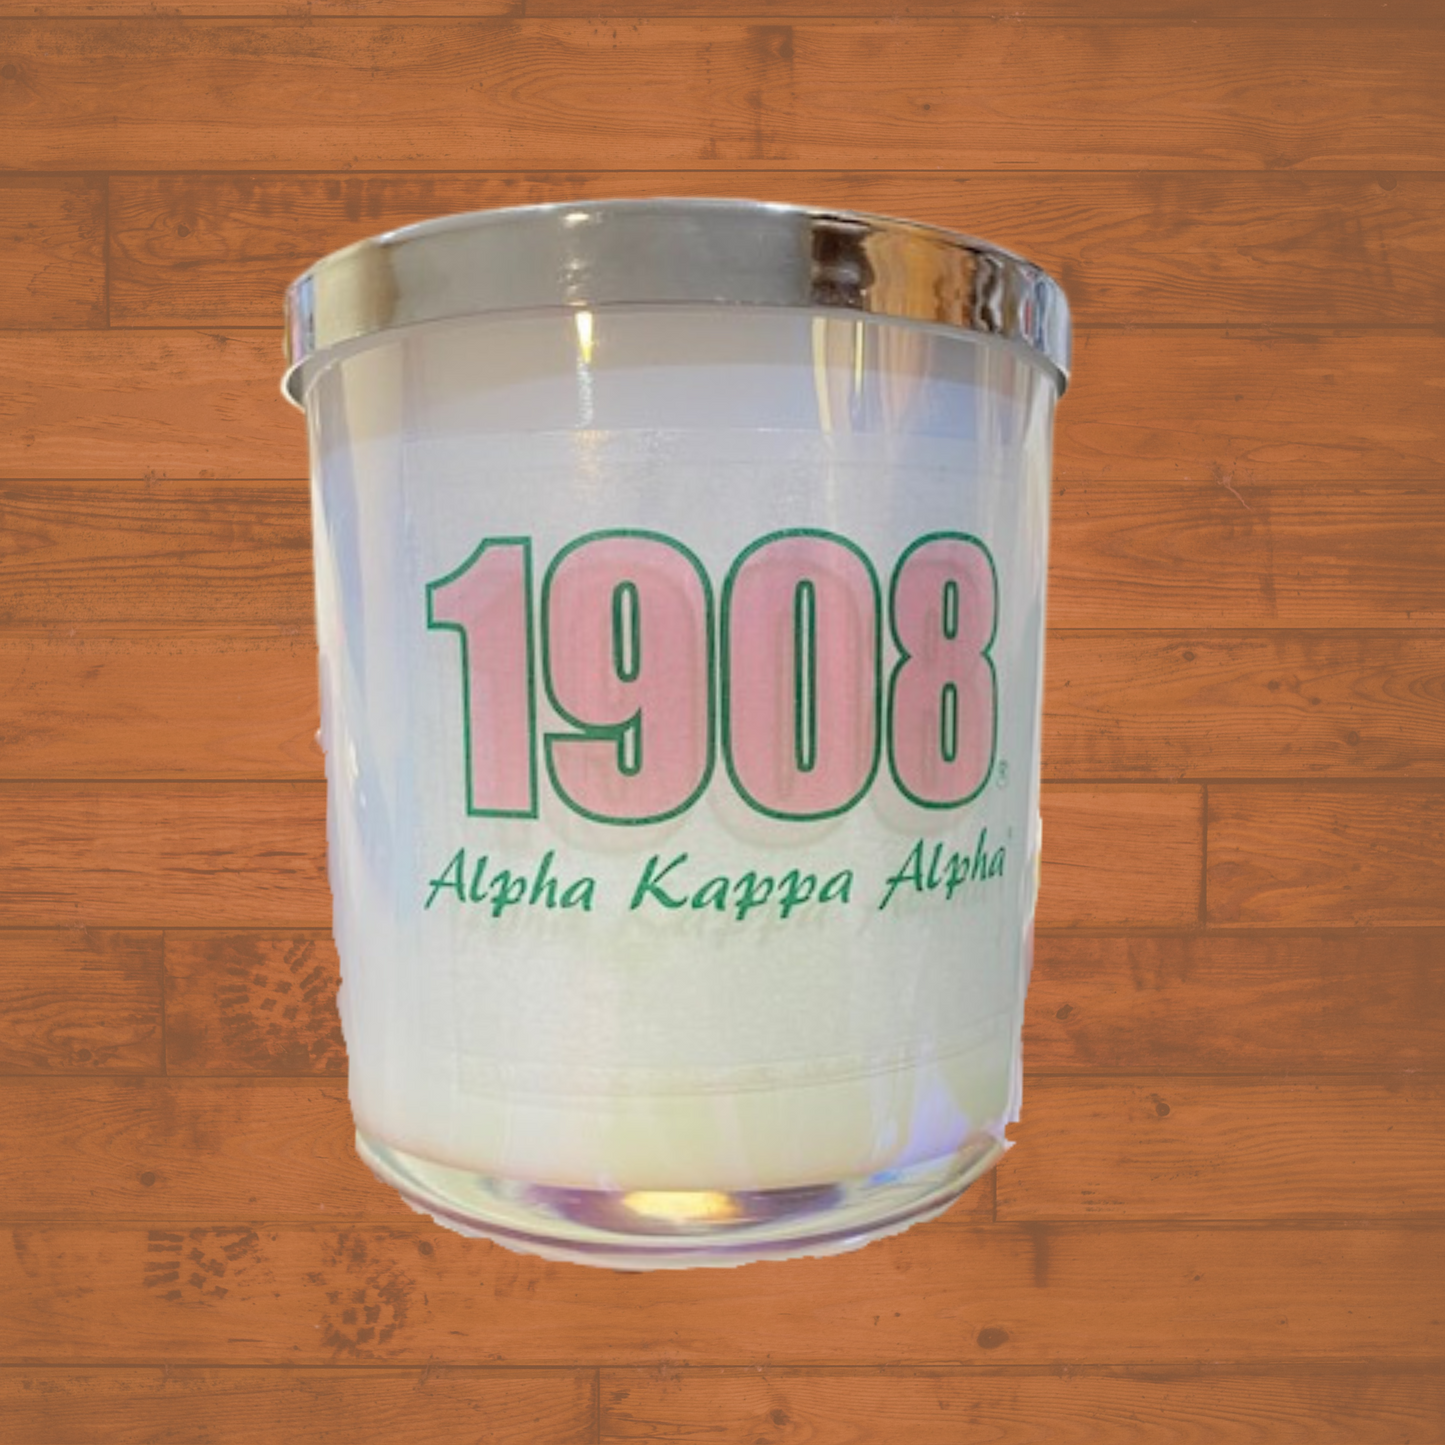 White 1908 Alpha Kappa Alpha candle